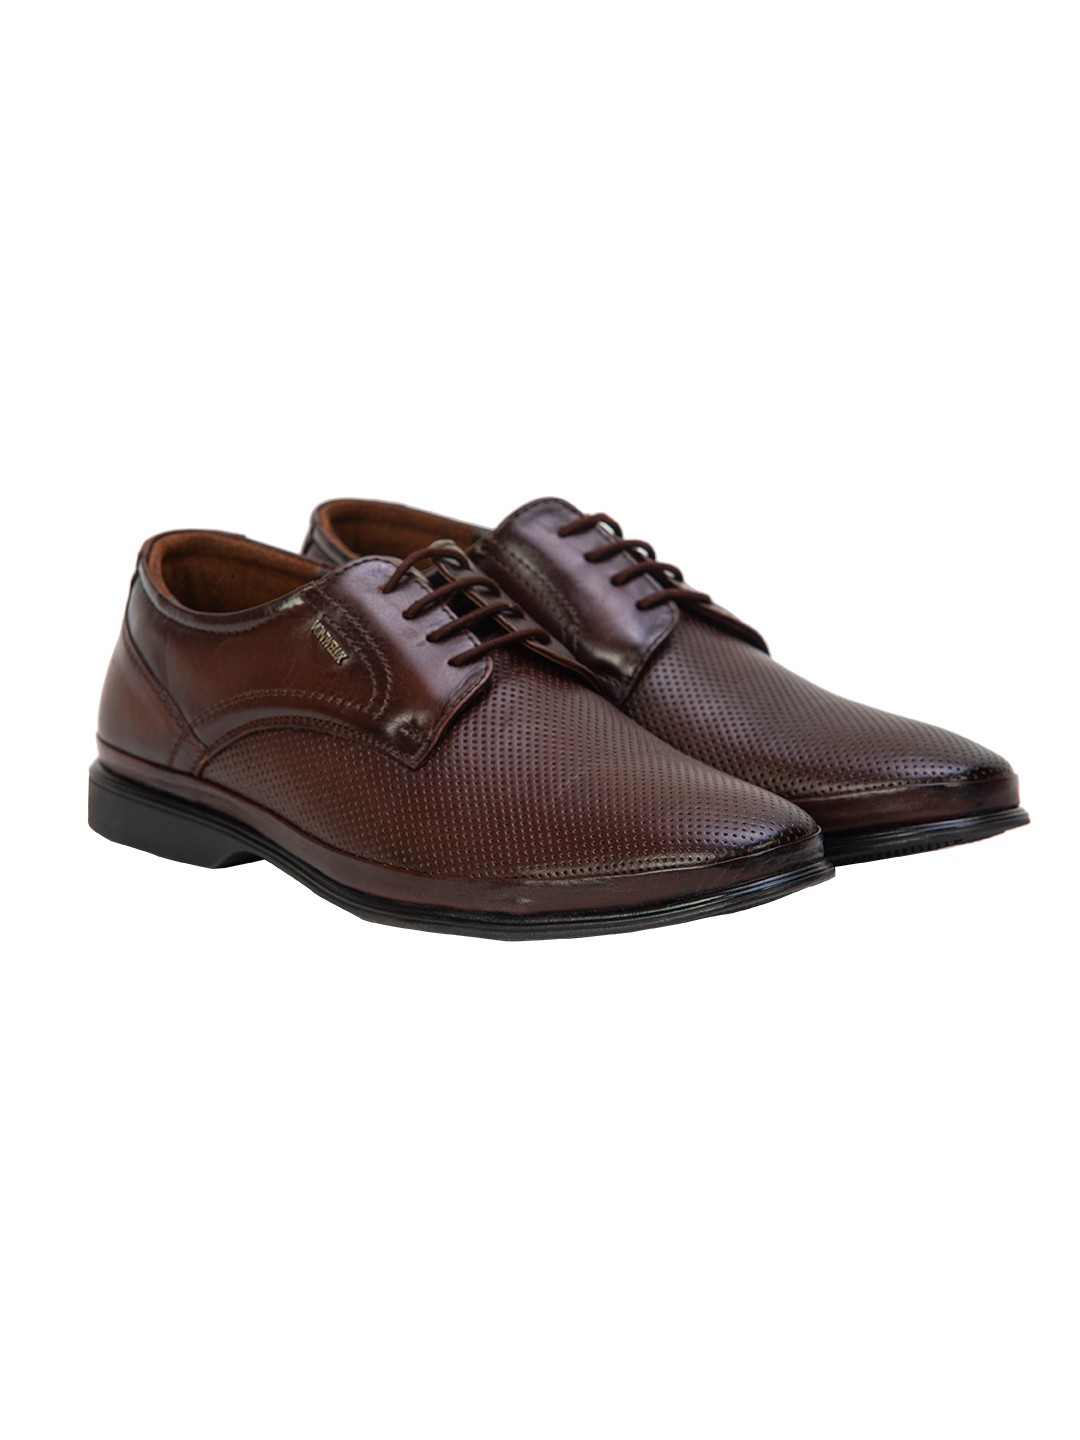 Buy Von Wellx Germany Comfort Coen Brown Shoes Online in Amritsar